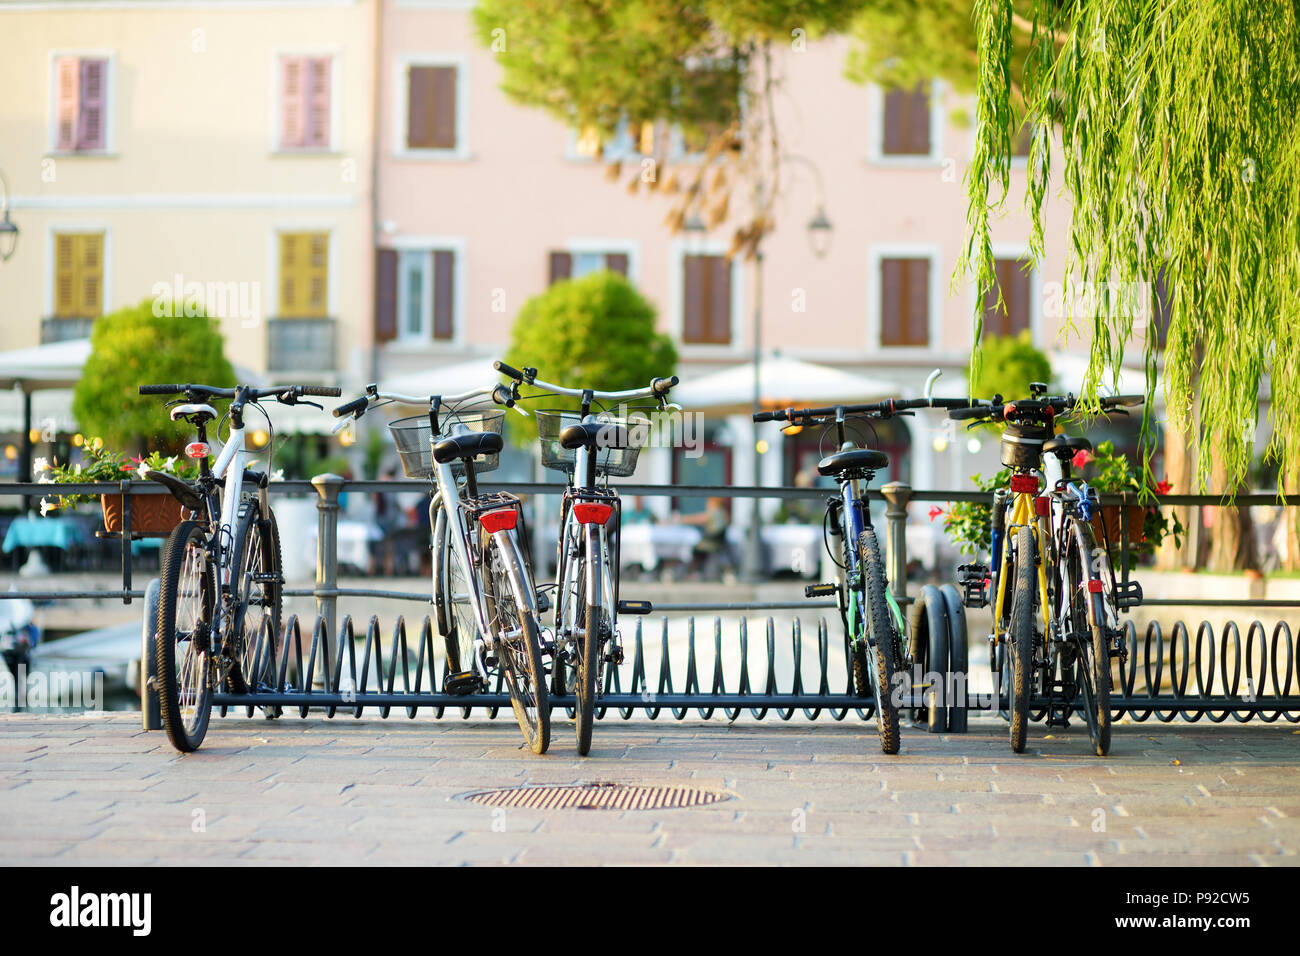 Alcune moto parcheggiate nella piccola città italiana Foto Stock